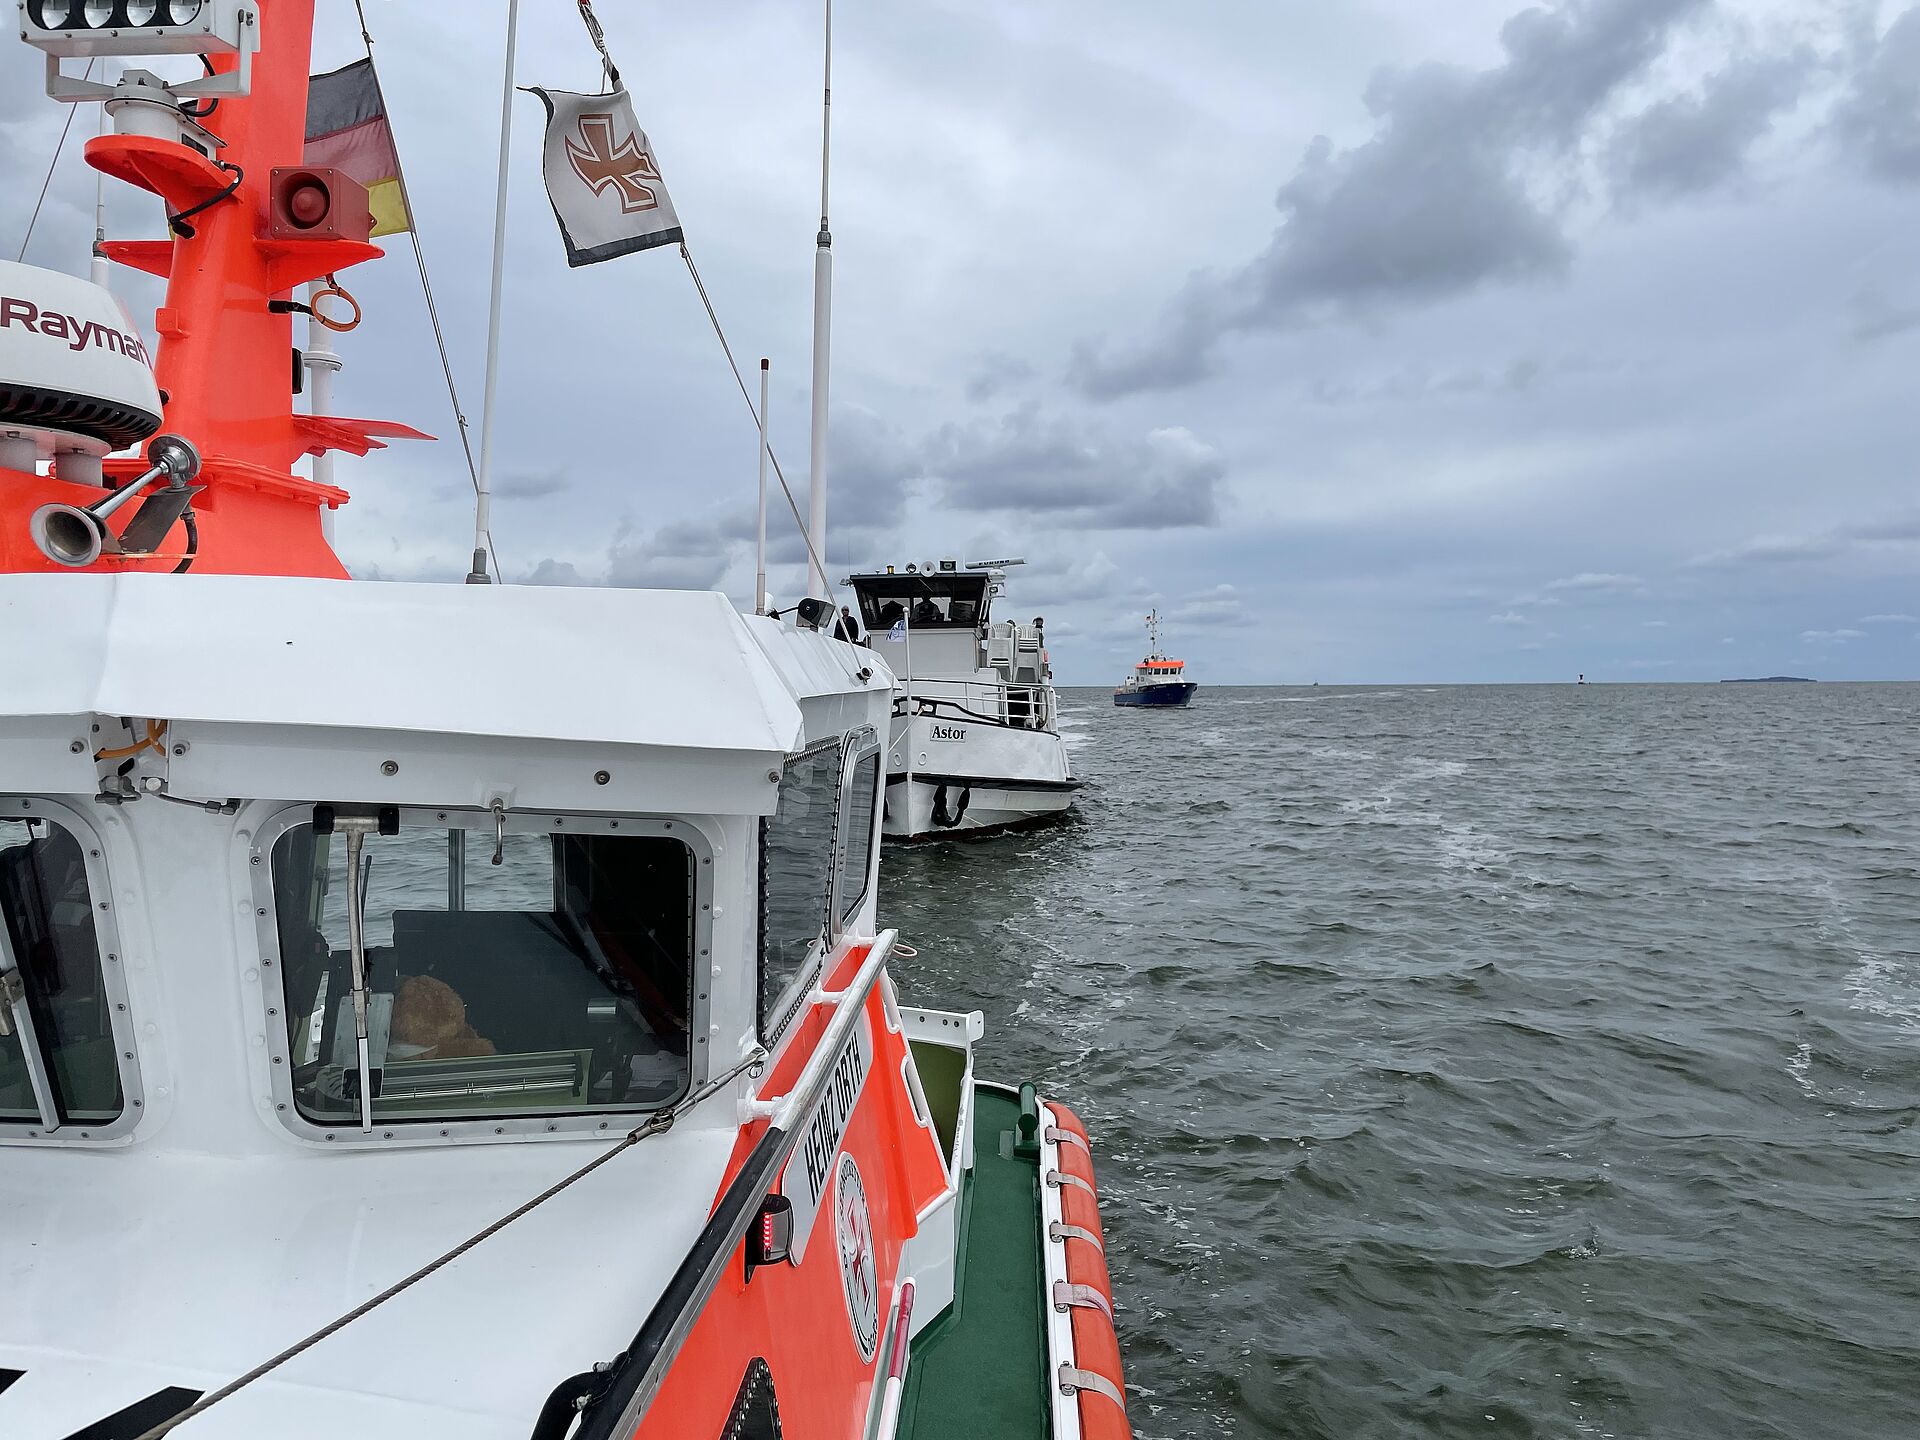 Seenotretter bringen Fahrgastschiff mit Maschinenschaden sicher in den Hafen